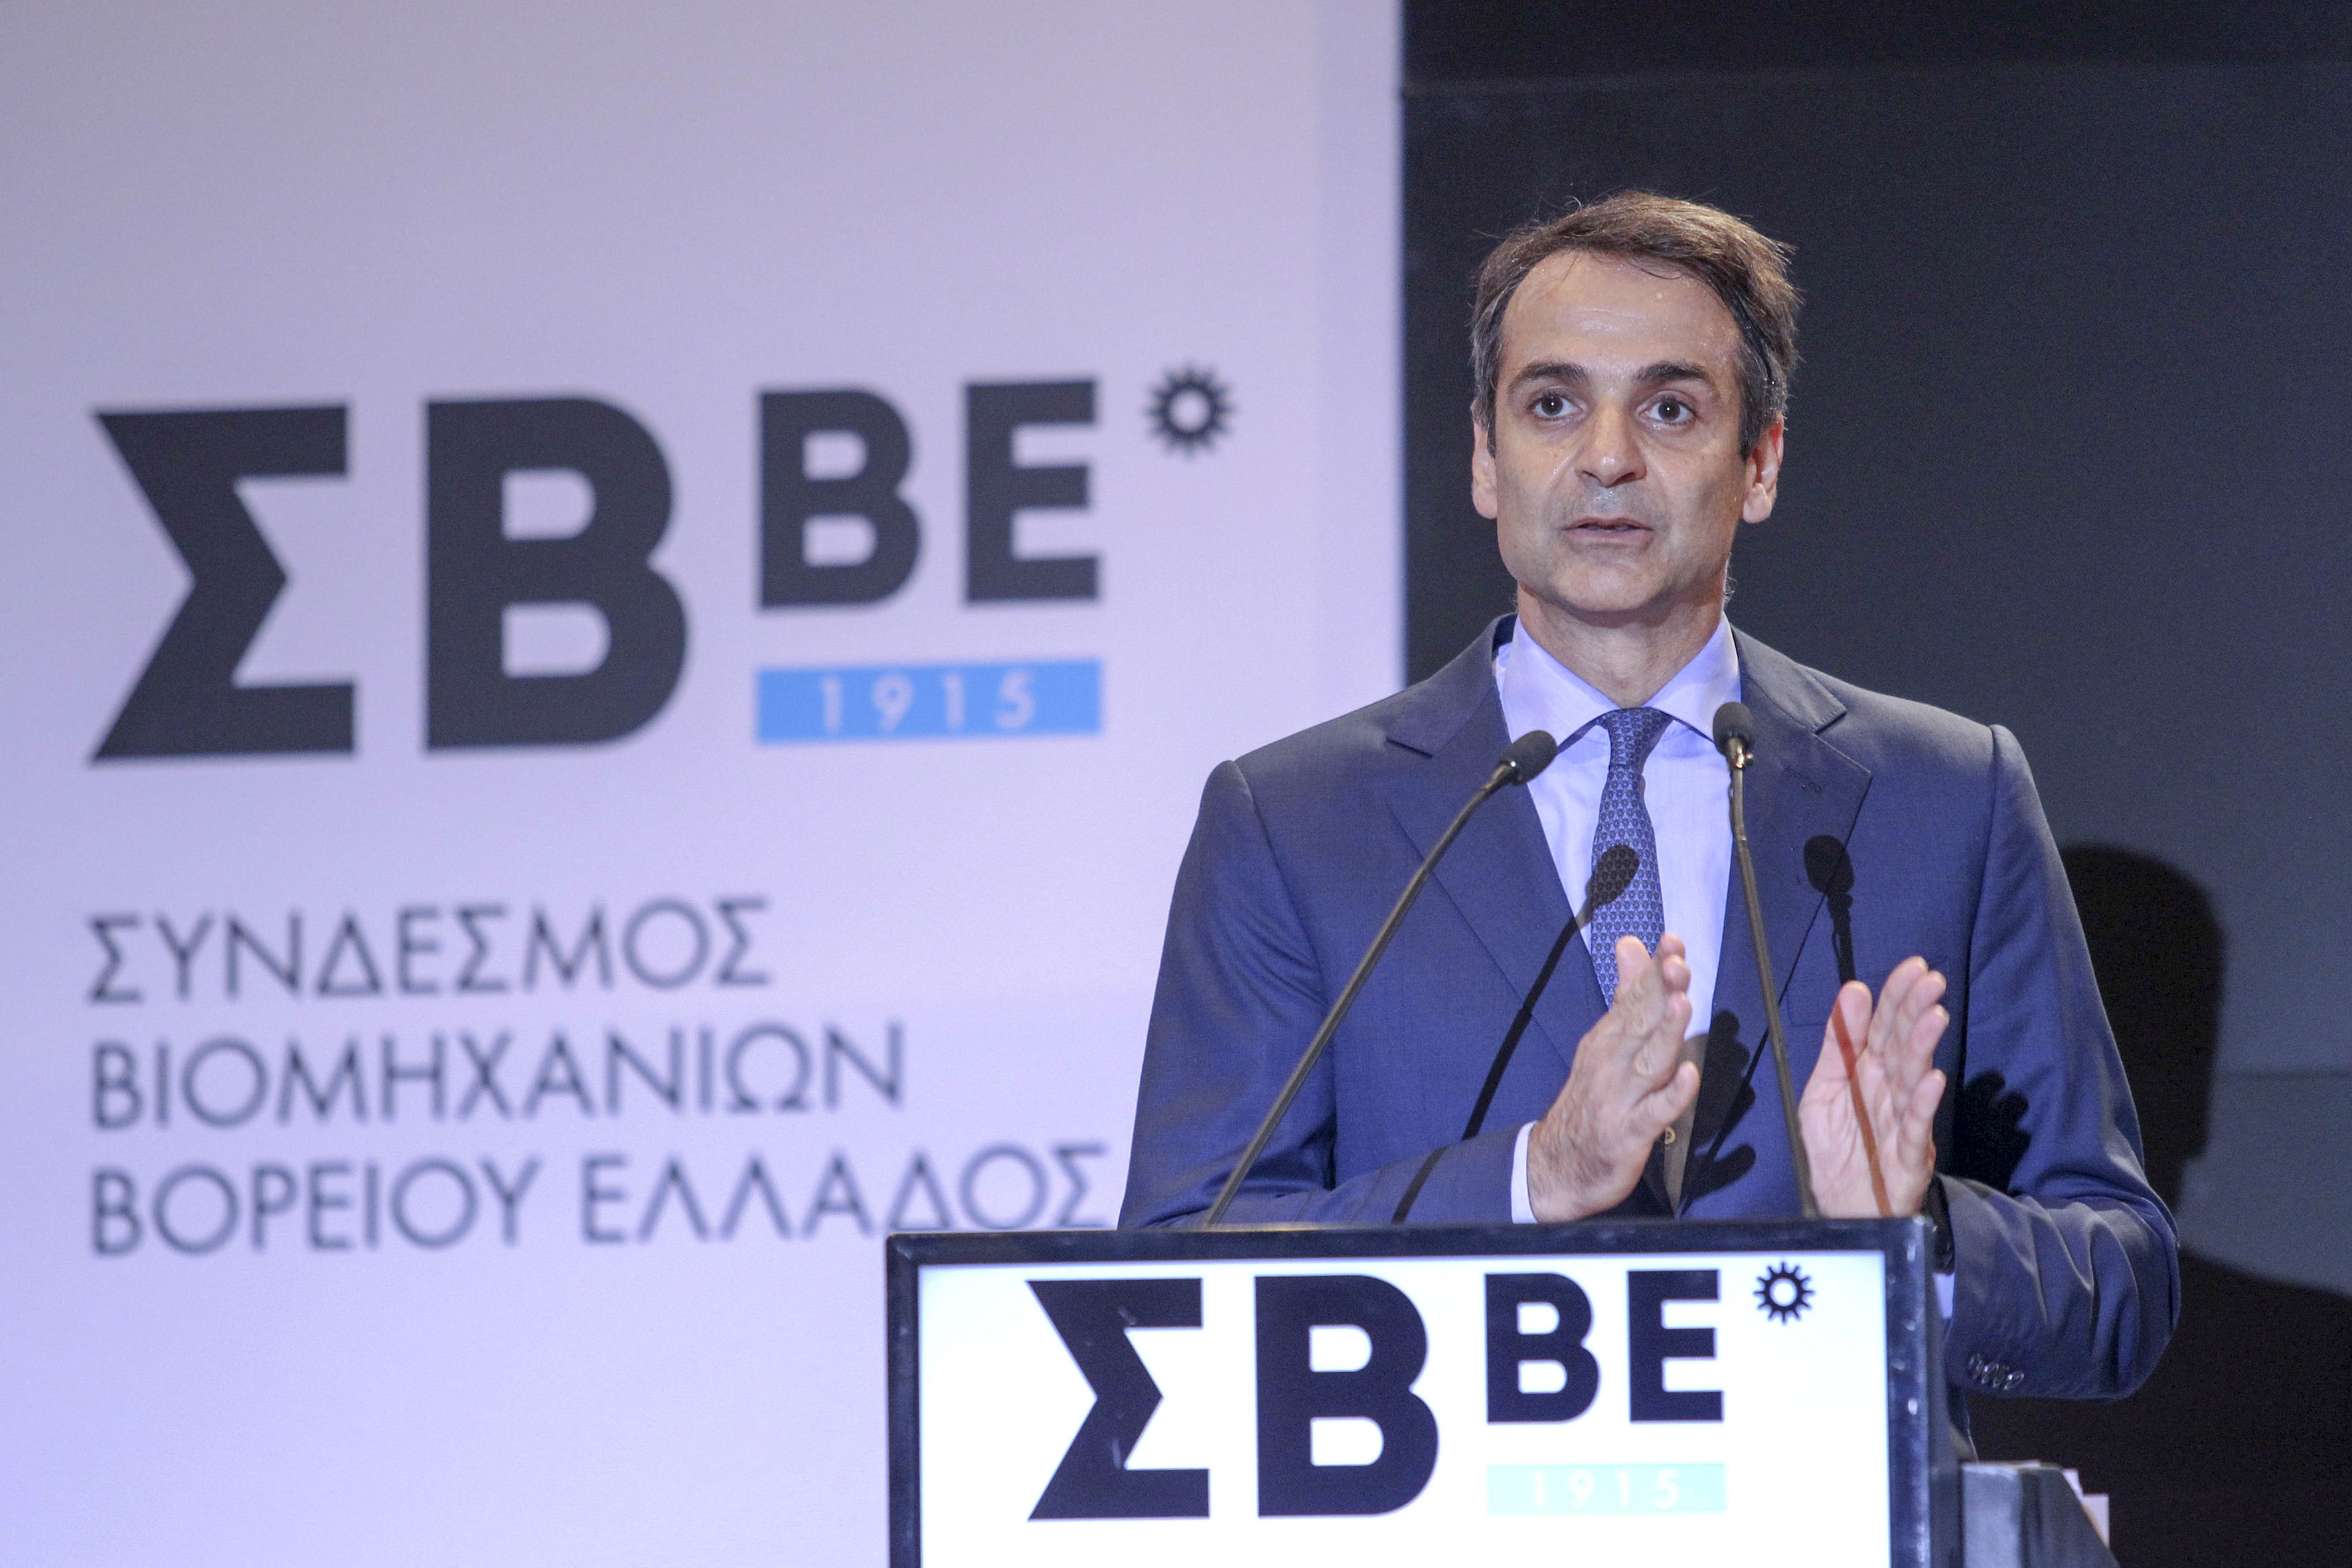 Μητσοτάκης στον ΣΒΒΕ: Η Ελλάδα θα γίνει ξανά ελκυστική για επενδύσεις